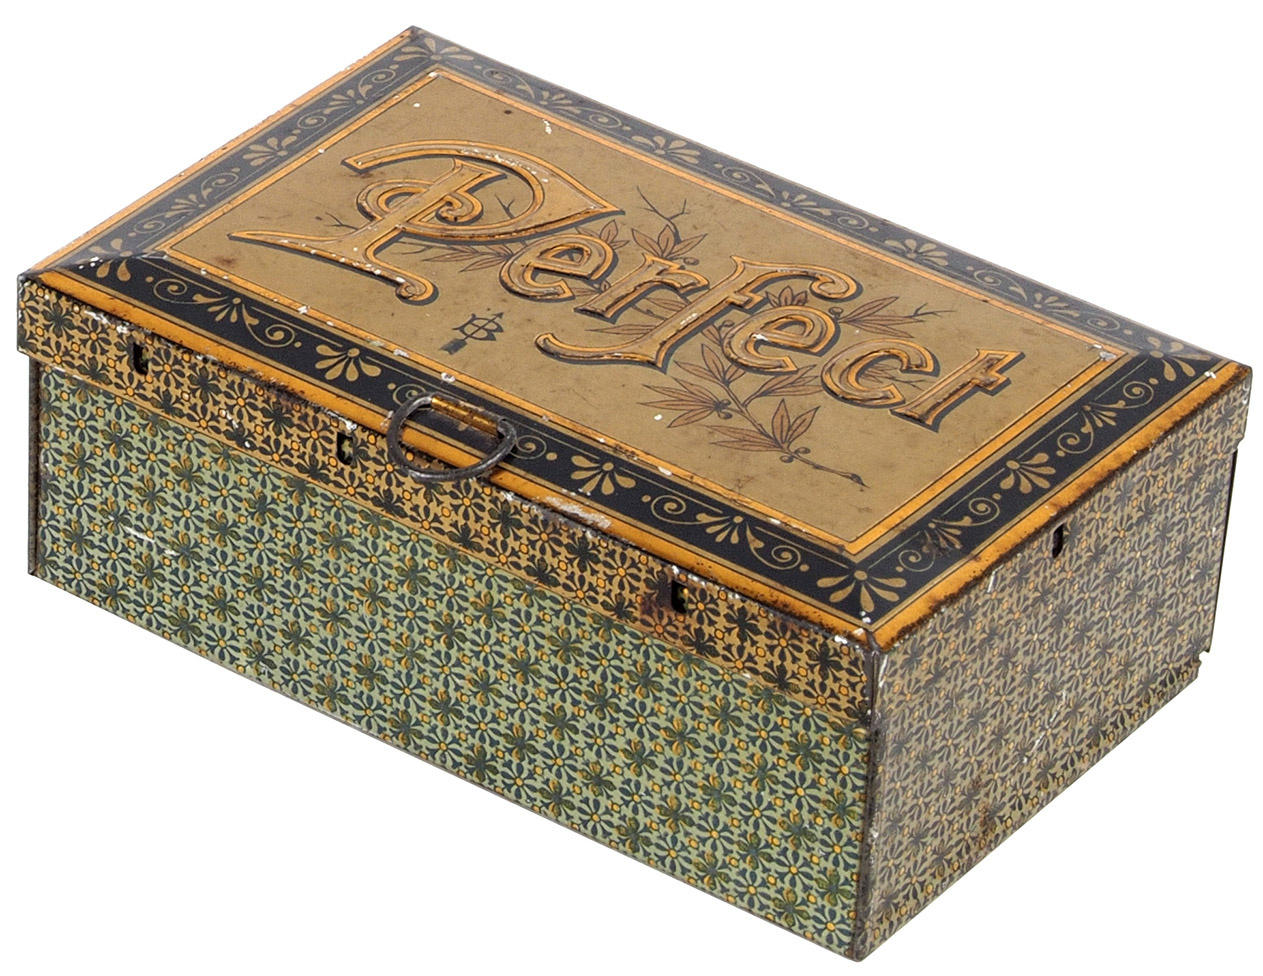 Рукописная книга Цветаевой ушла с молотка за 7 миллионов. А с ней — подпольная типография в коробке от конфет